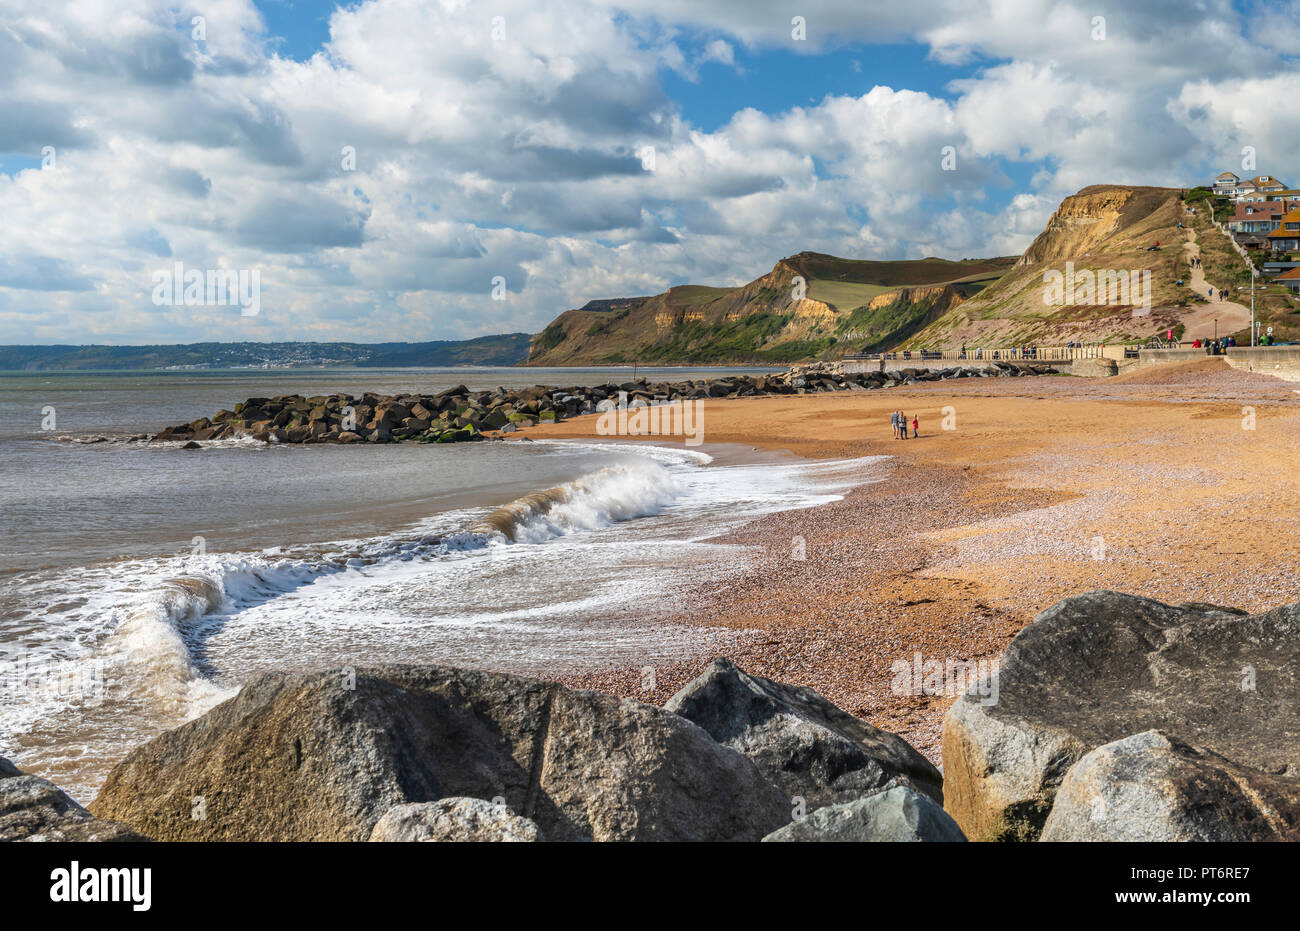 In un pomeriggio soleggiato sulla Jurassic Coast, una famiglia guarda le onde si infrangono sulla bella spiaggia di West Bay nel Dorset. Foto Stock